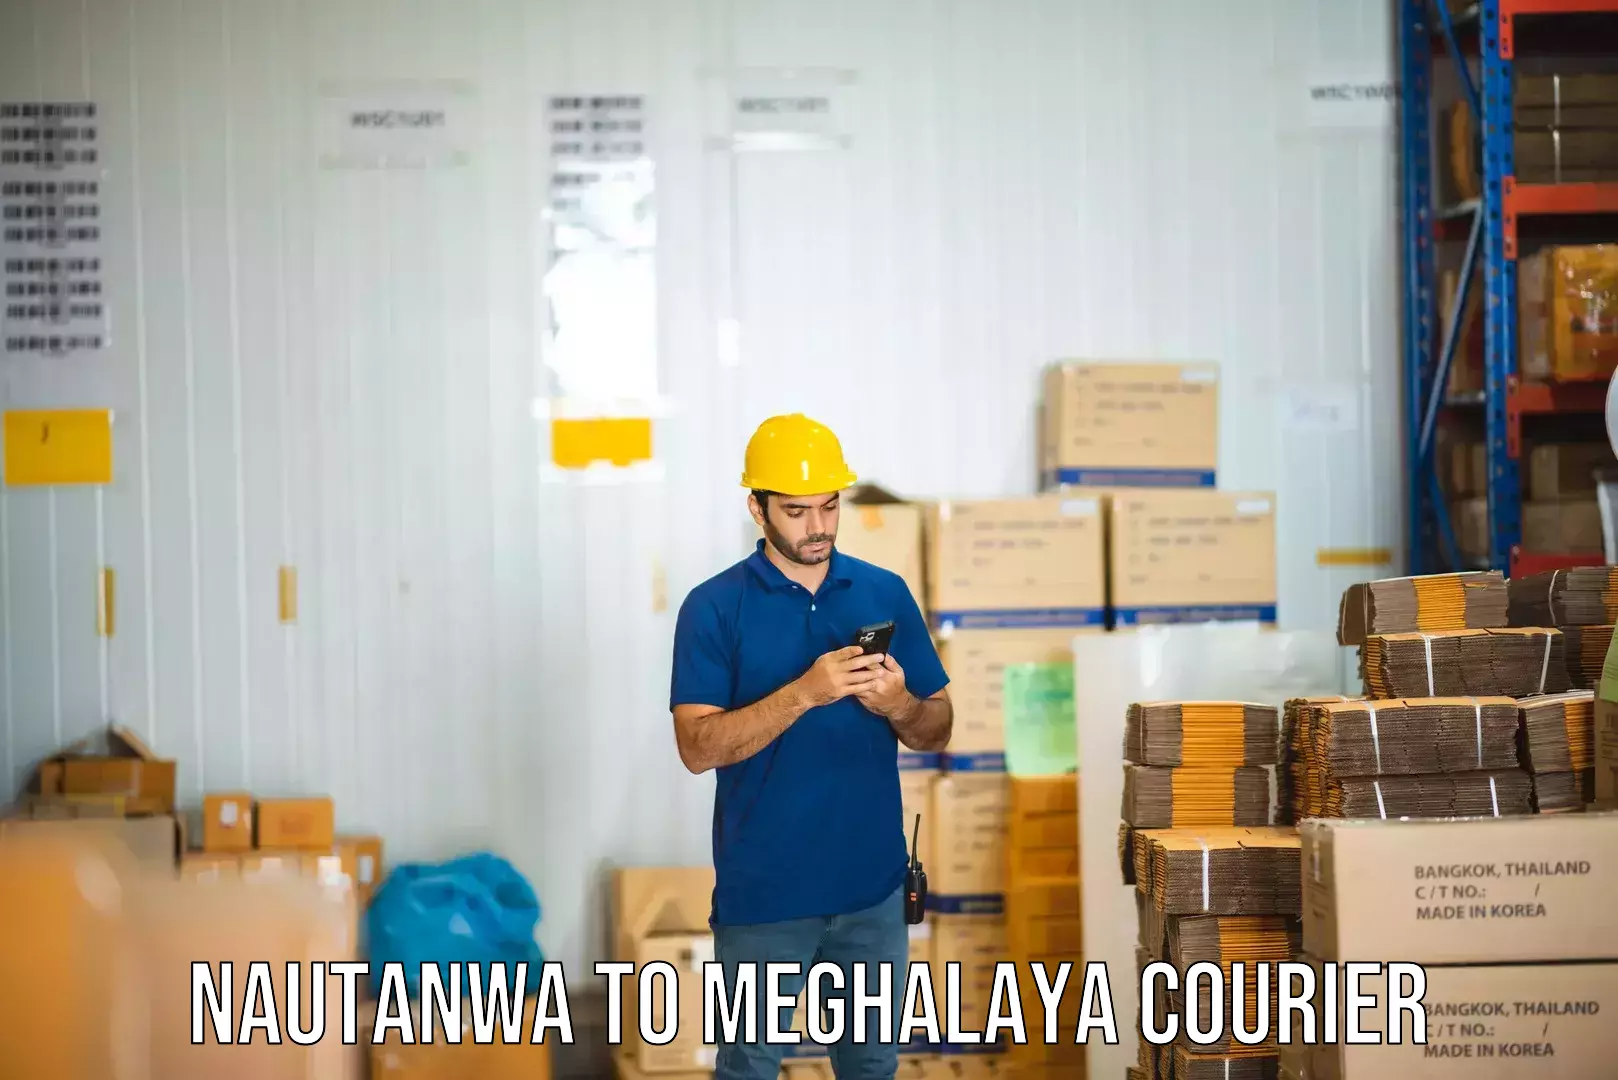 Express courier facilities Nautanwa to Meghalaya